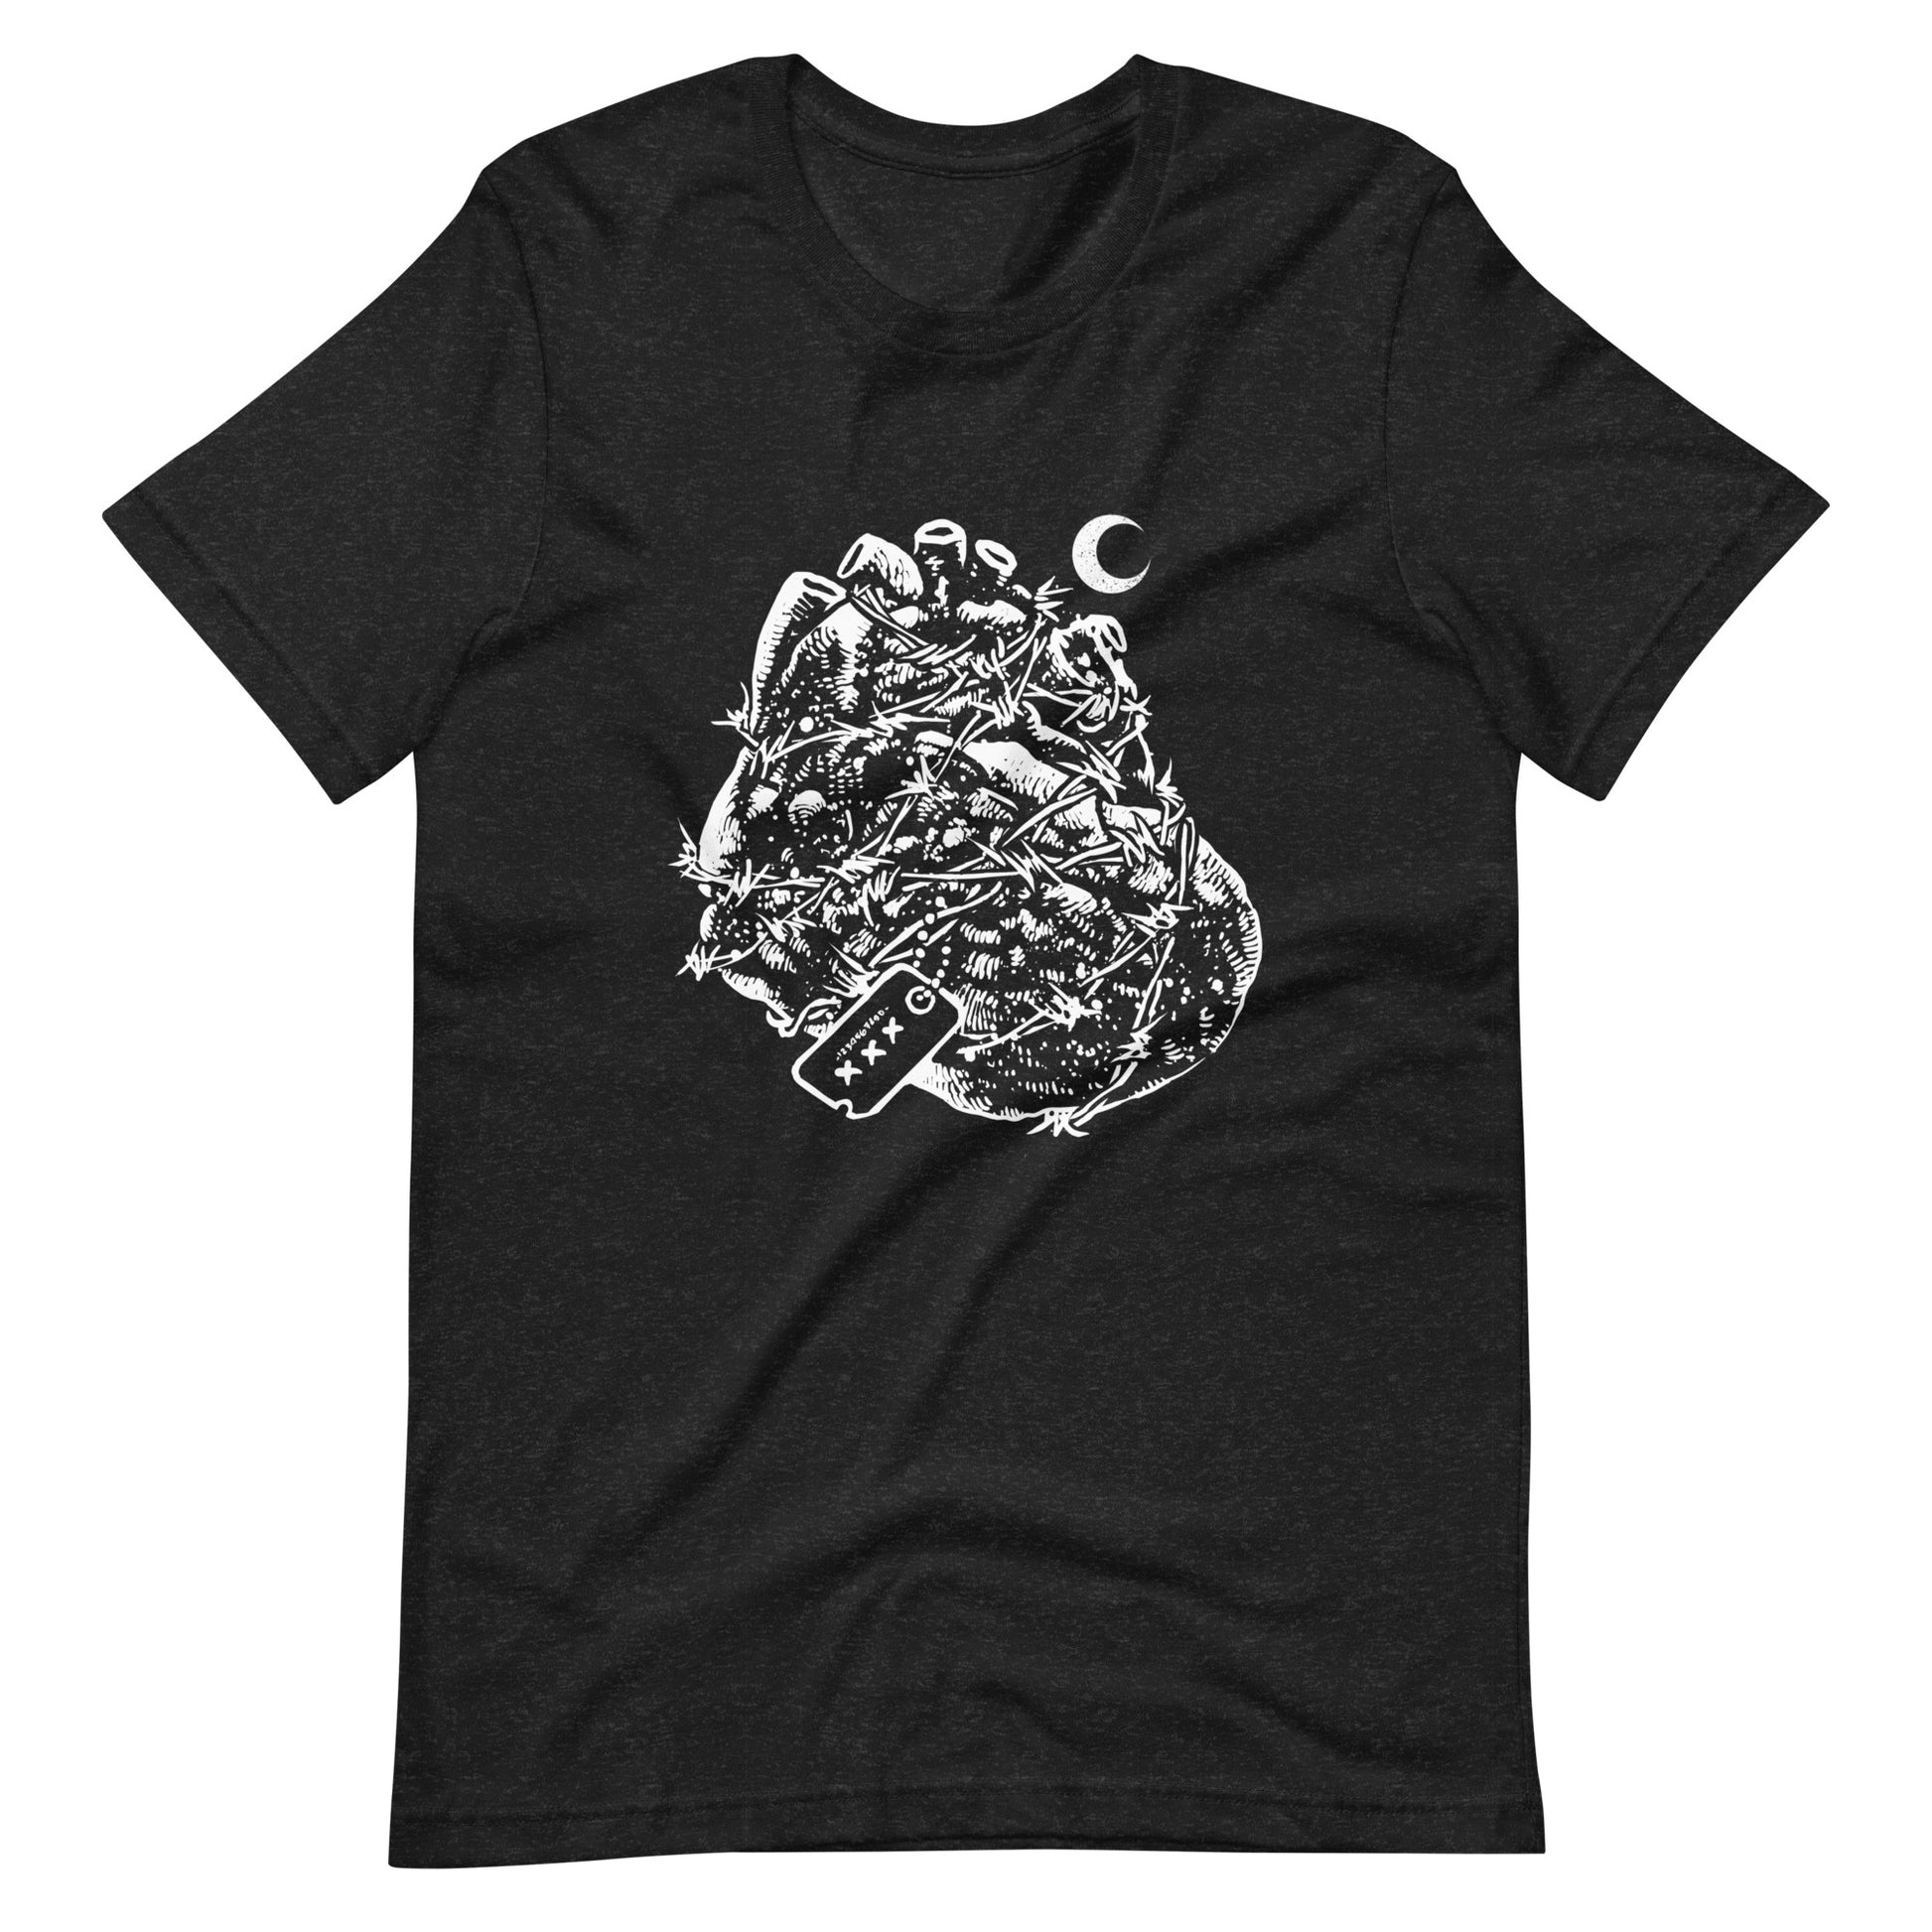 Heart Heroes - Men's t-shirt - Black Heather Front